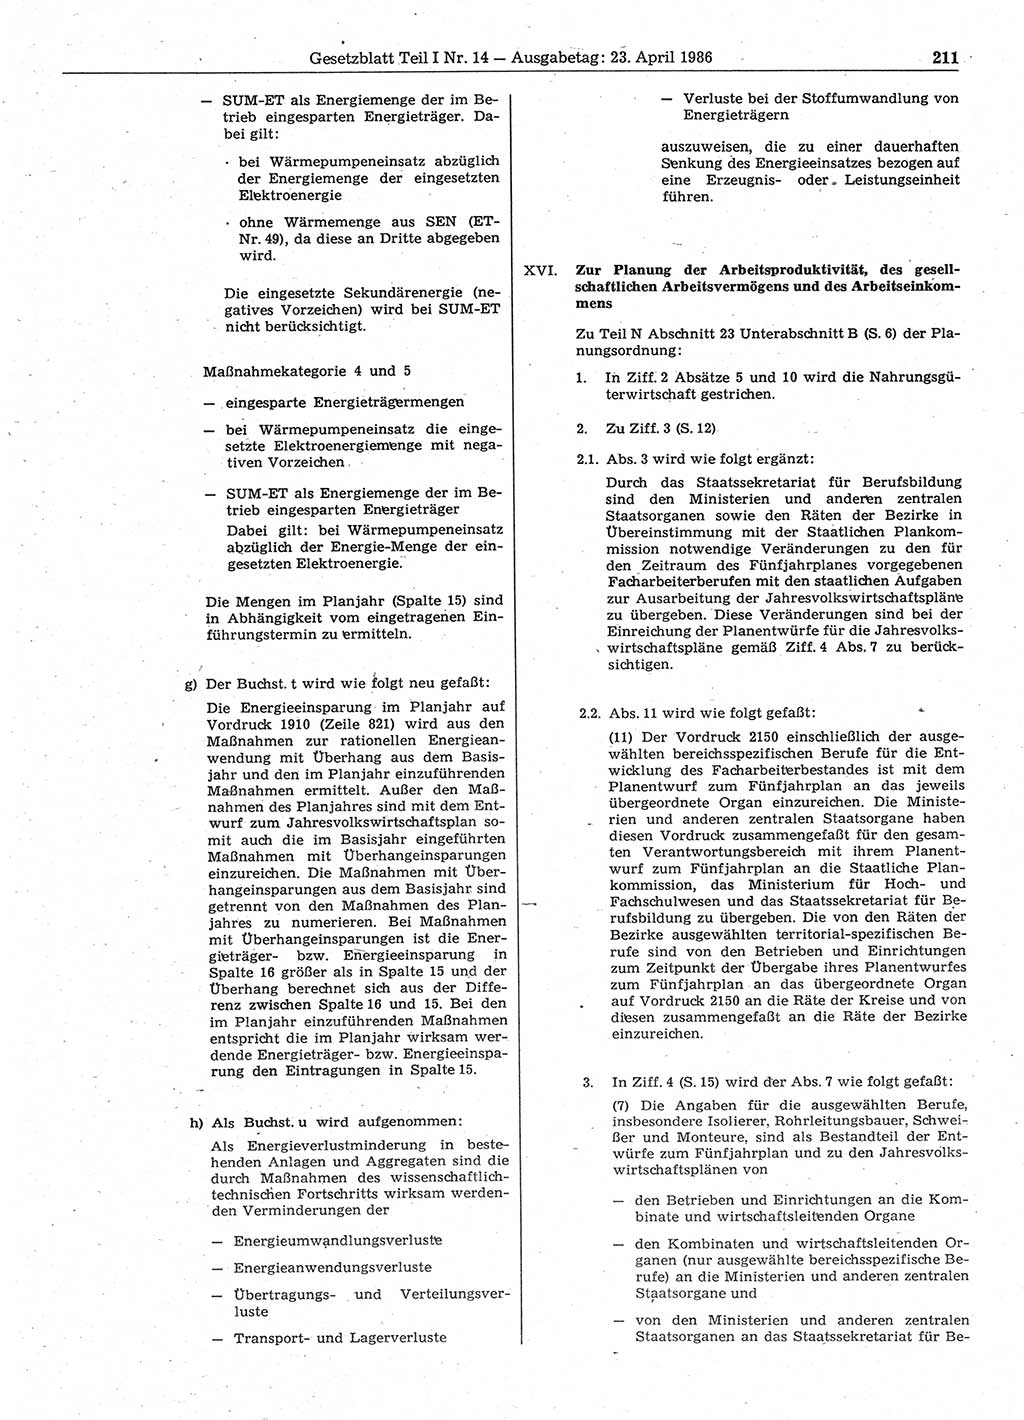 Gesetzblatt (GBl.) der Deutschen Demokratischen Republik (DDR) Teil Ⅰ 1986, Seite 211 (GBl. DDR Ⅰ 1986, S. 211)